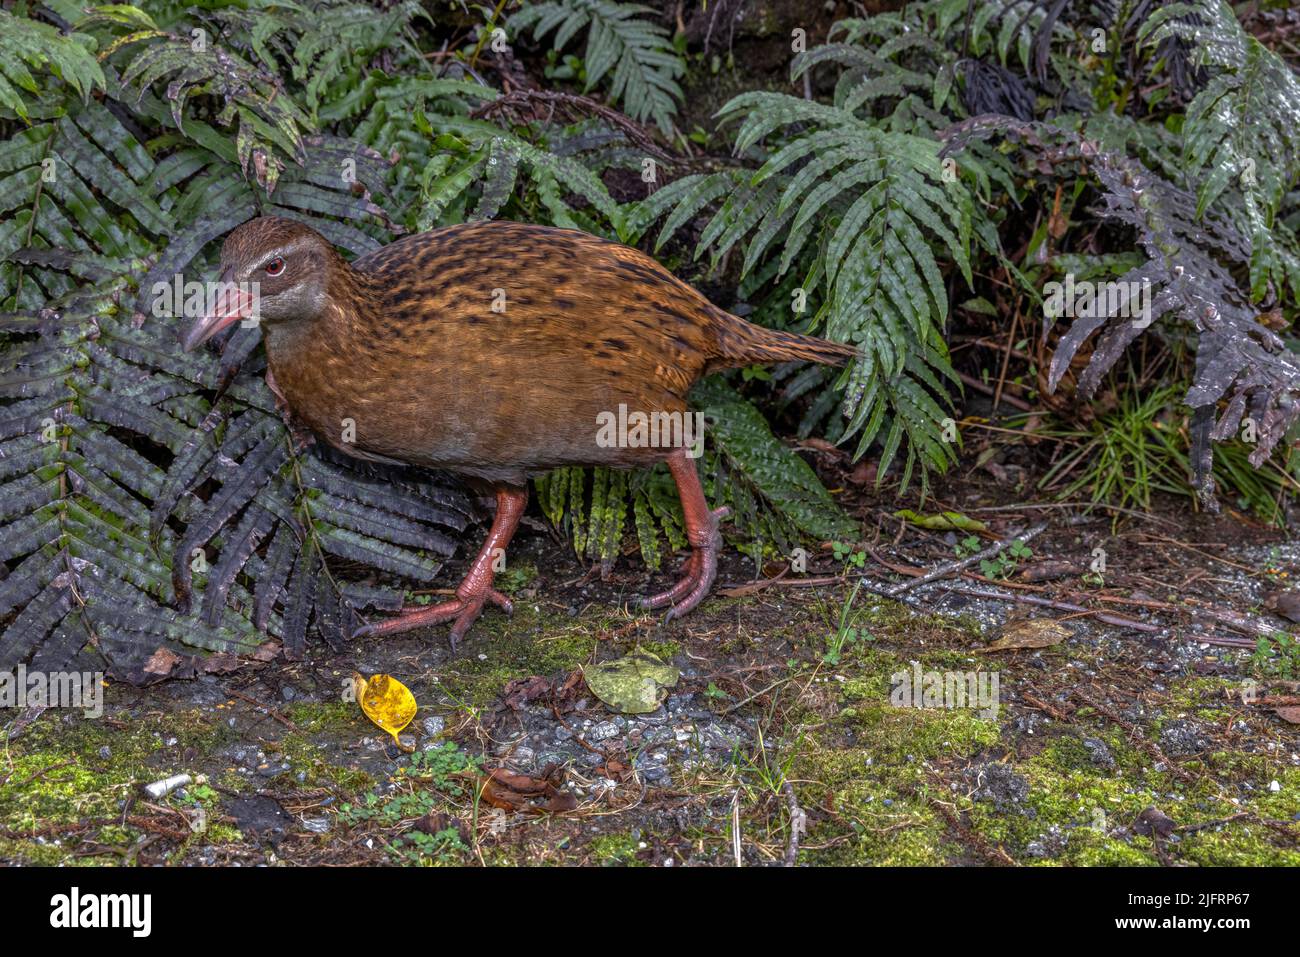 Western Weka (Gallirallus australis australis) Ilsnad meridionale, Nuova Zelanda. La Weka è una specie di uccelli senza luce della famiglia Rail. È endemico a. Foto Stock